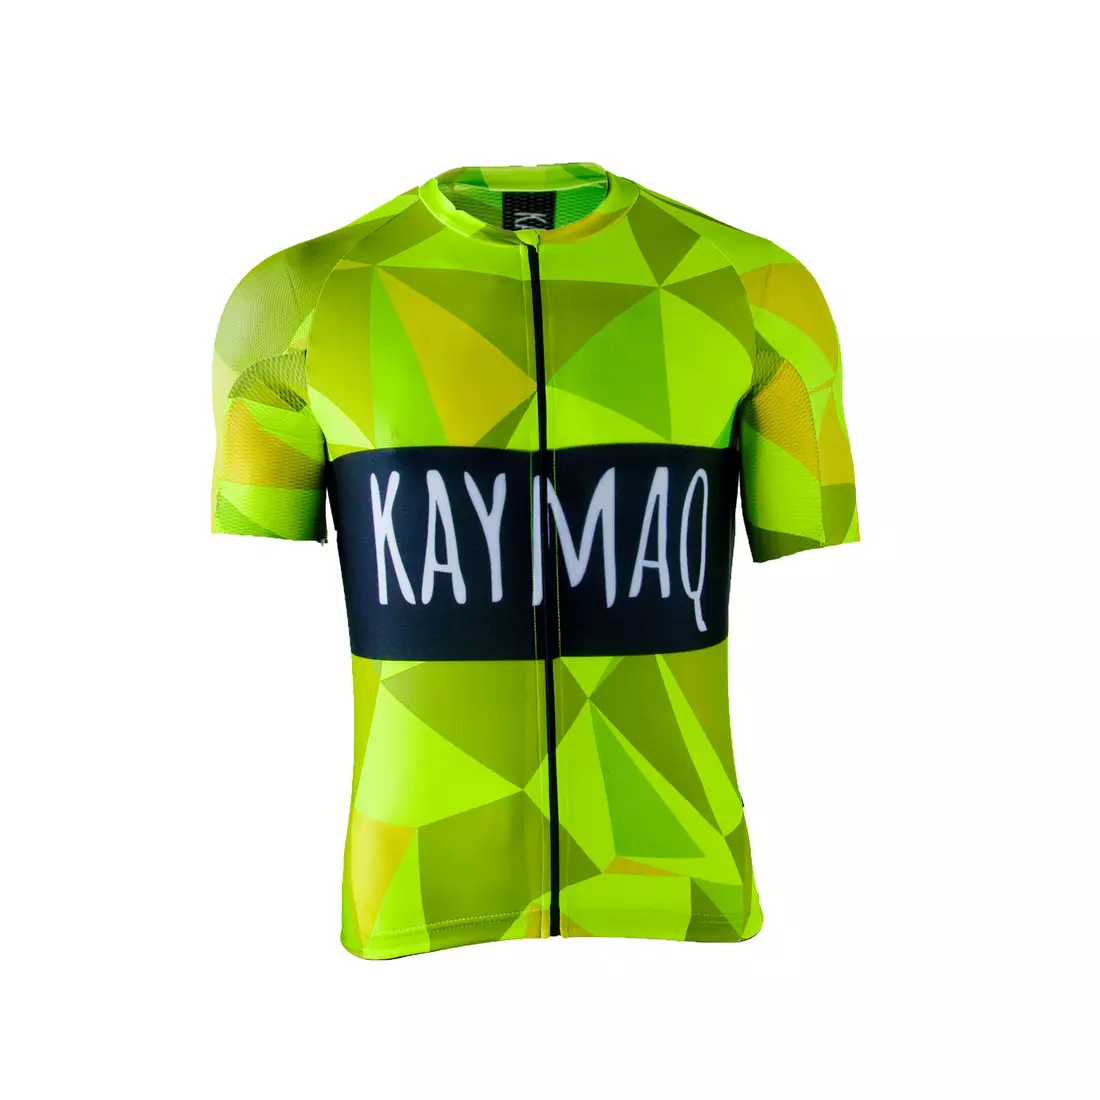 KAYMAQ RPS pánsky fluórový cyklistický dres